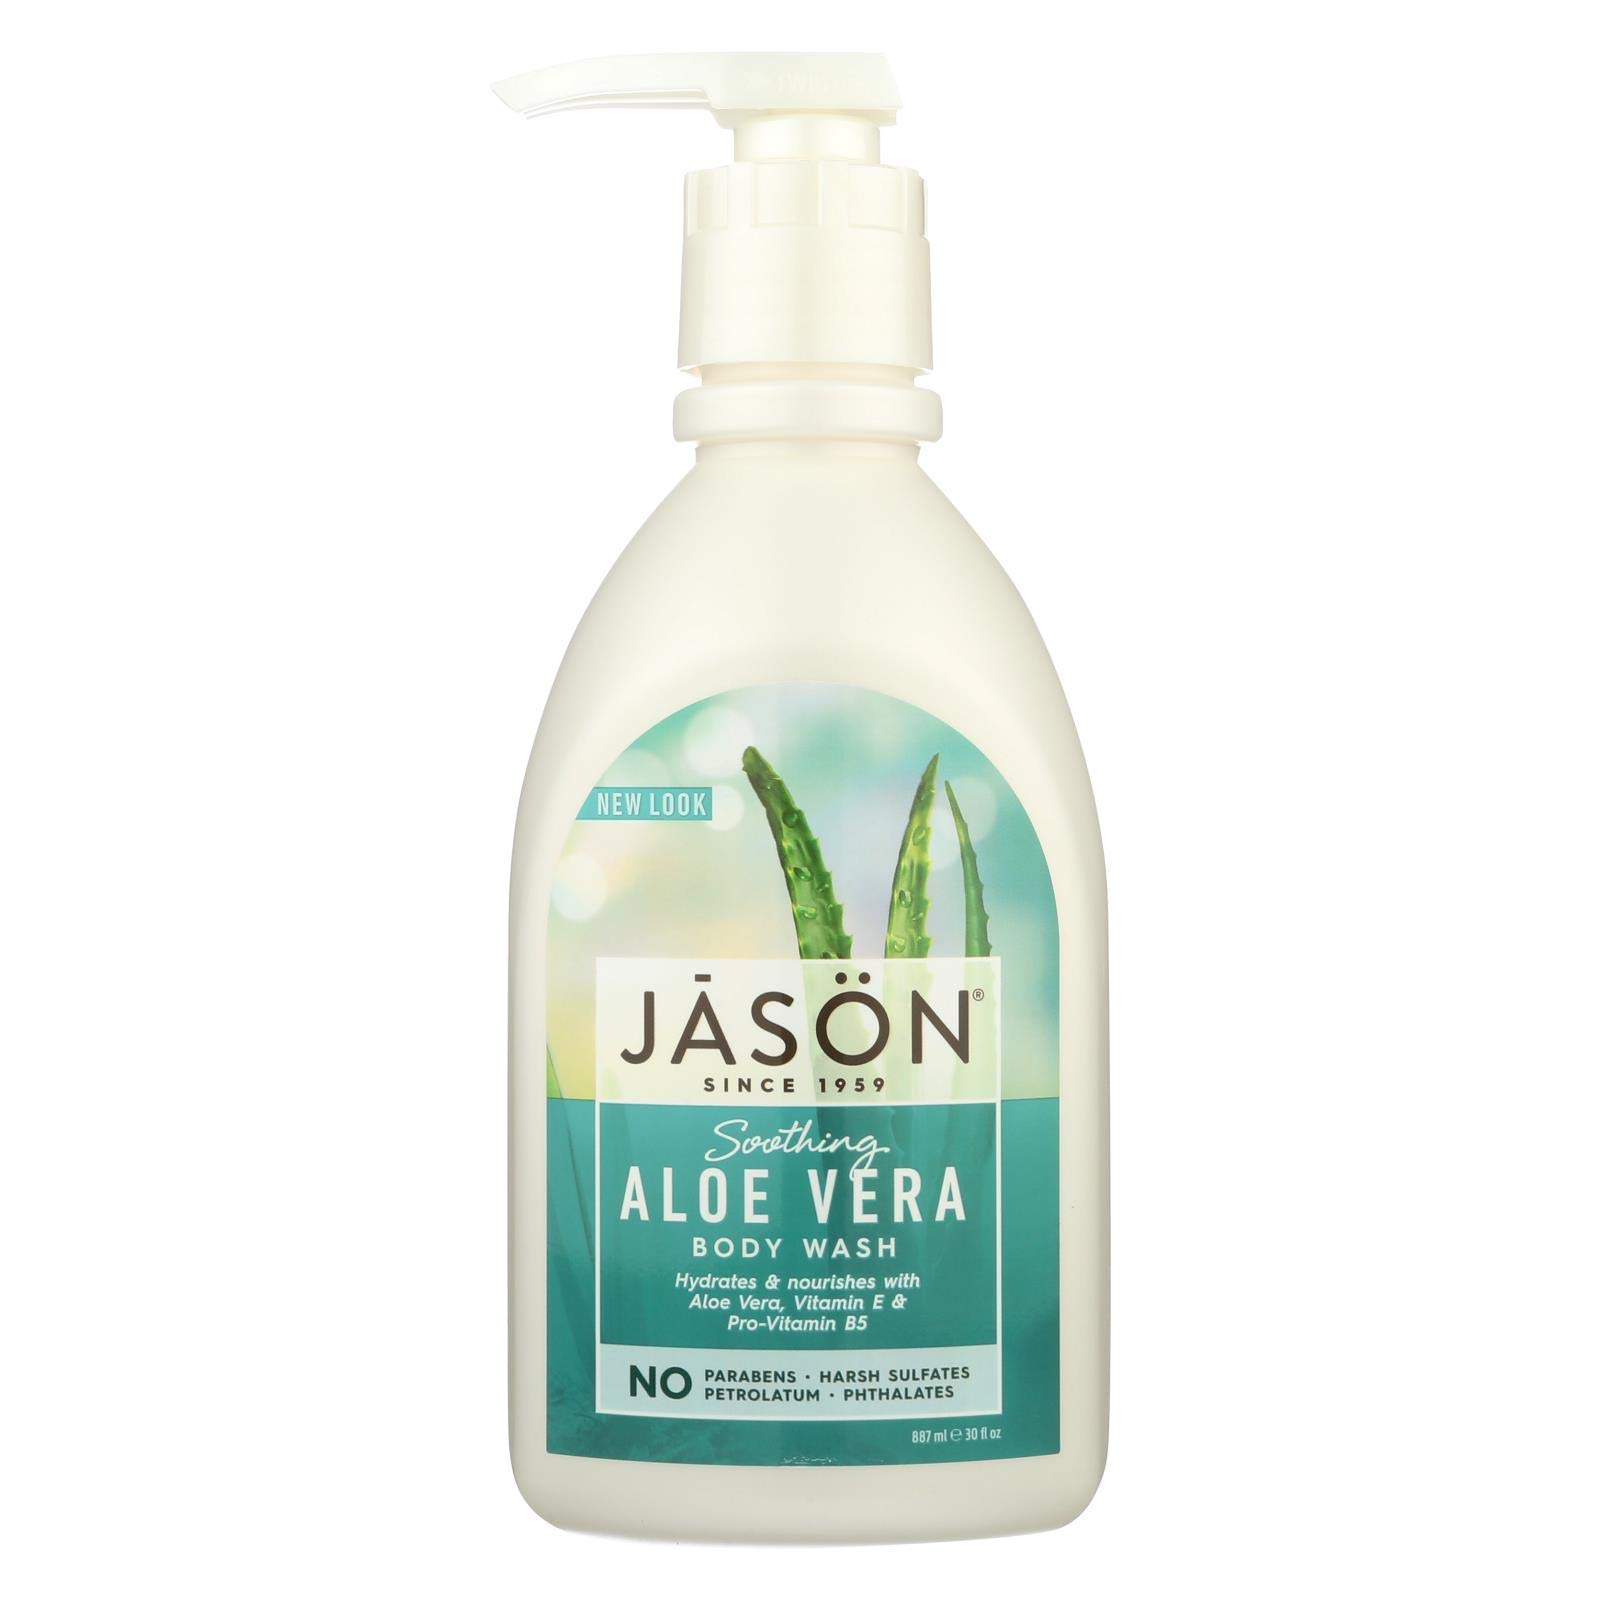 Jason Body Wash Soothing Aloe Vera Pure Natural - 30 fl oz